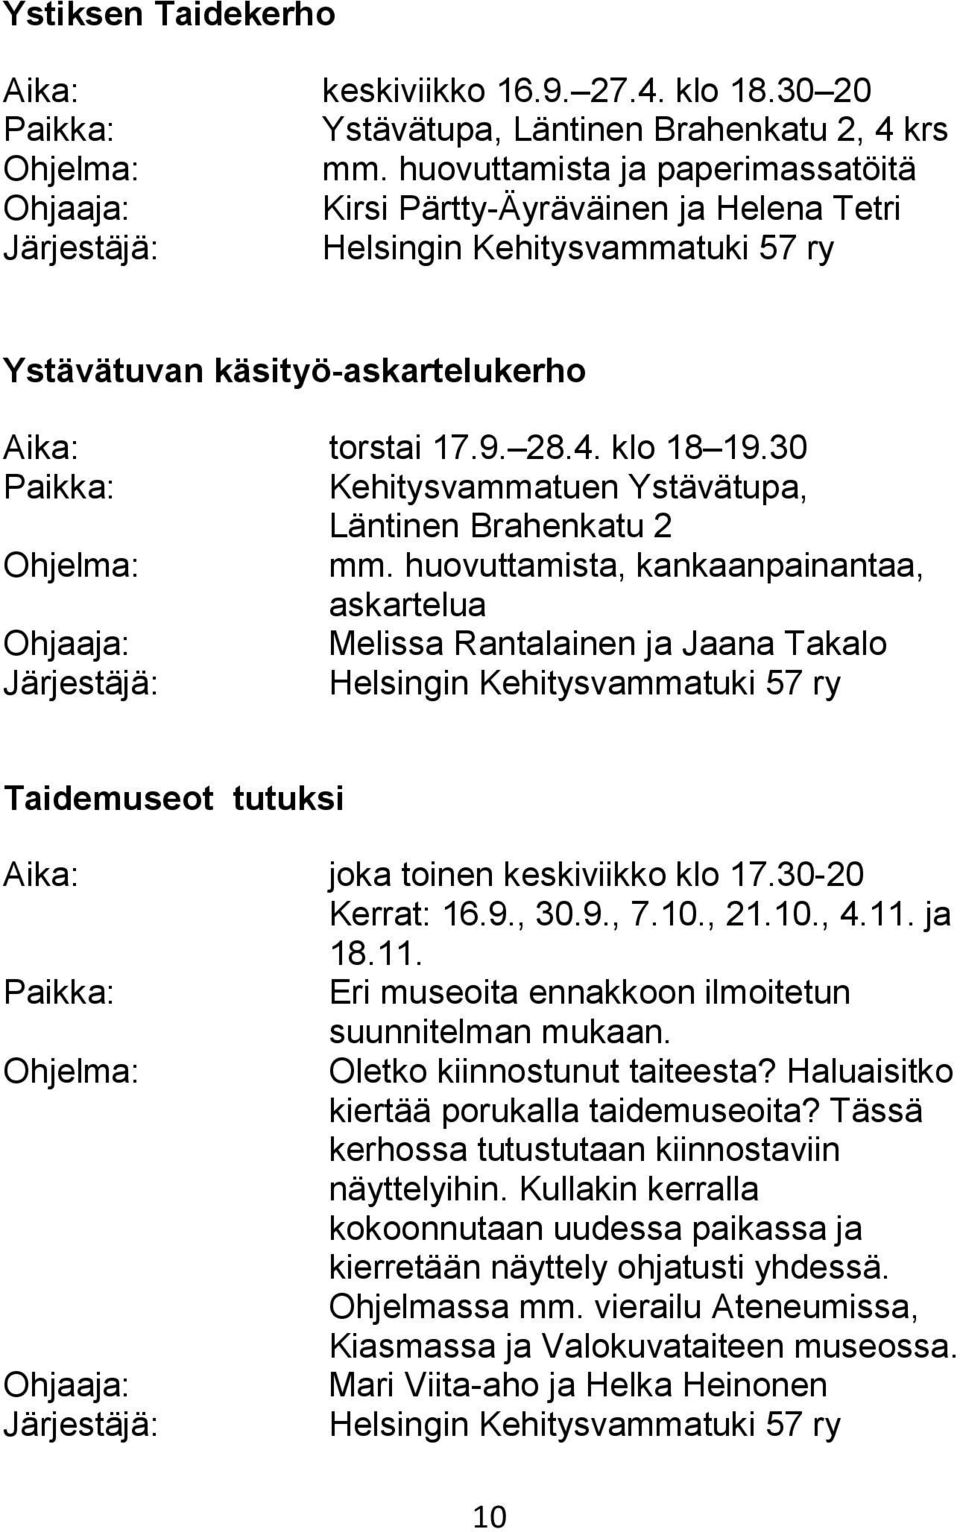 30 Kehitysvammatuen Ystävätupa, Läntinen Brahenkatu 2 mm. huovuttamista, kankaanpainantaa, askartelua Melissa Rantalainen ja Jaana Takalo Taidemuseot tutuksi Aika: joka toinen keskiviikko klo 17.